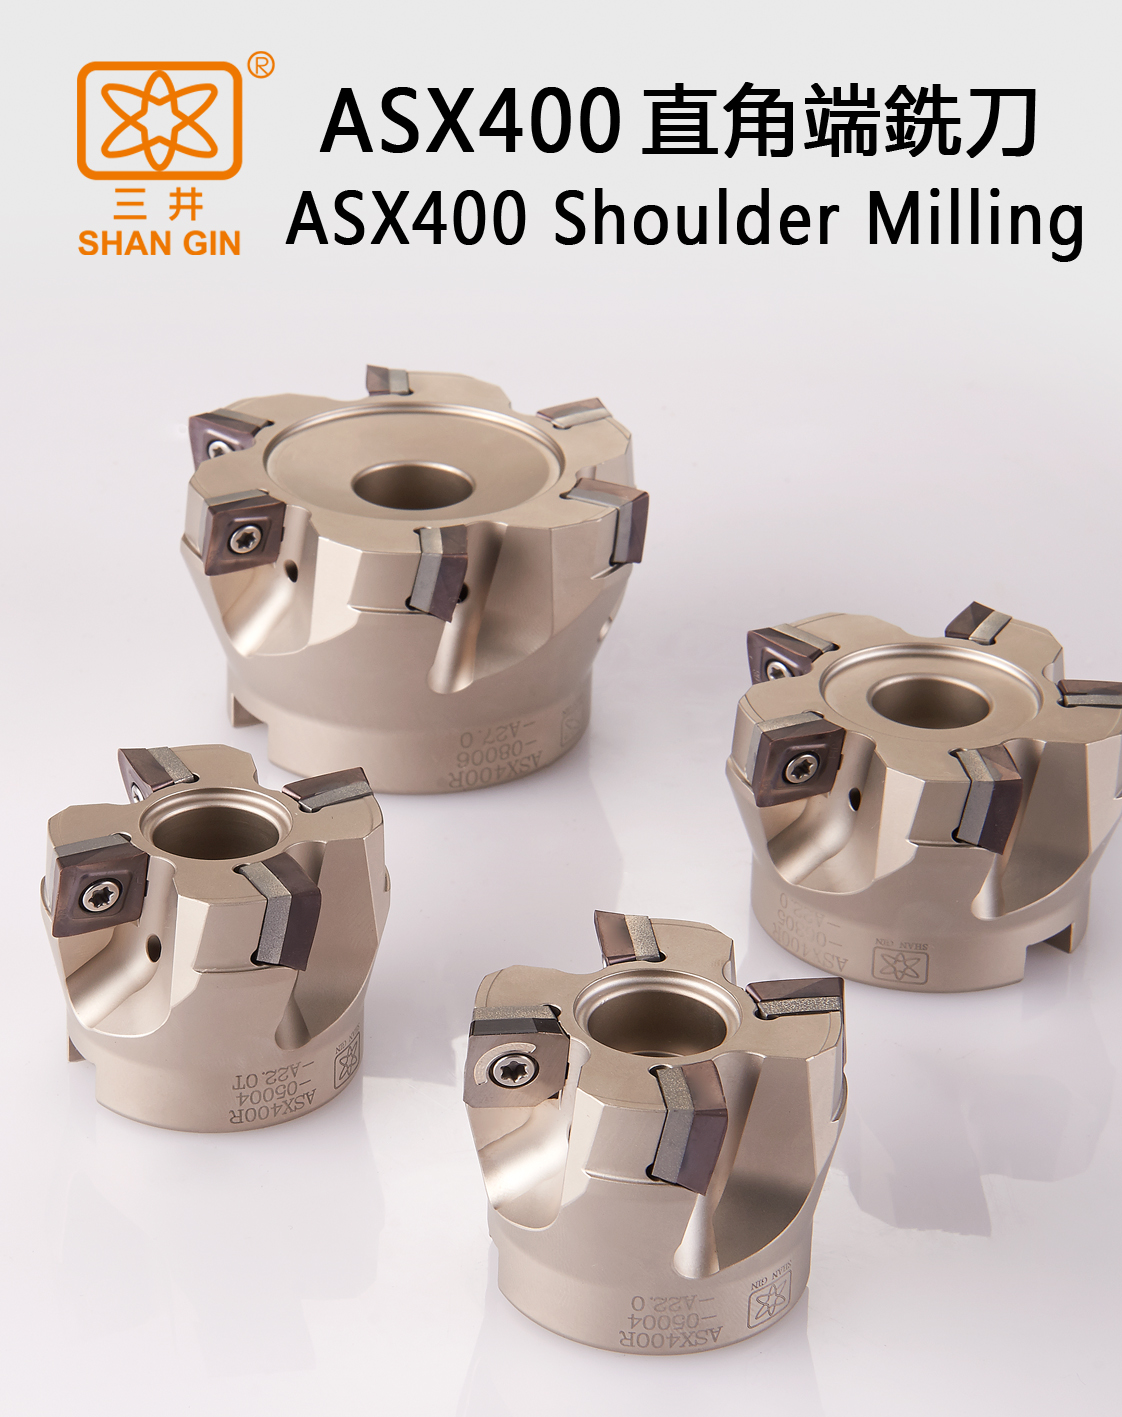 ASX400 Shoulder Milling